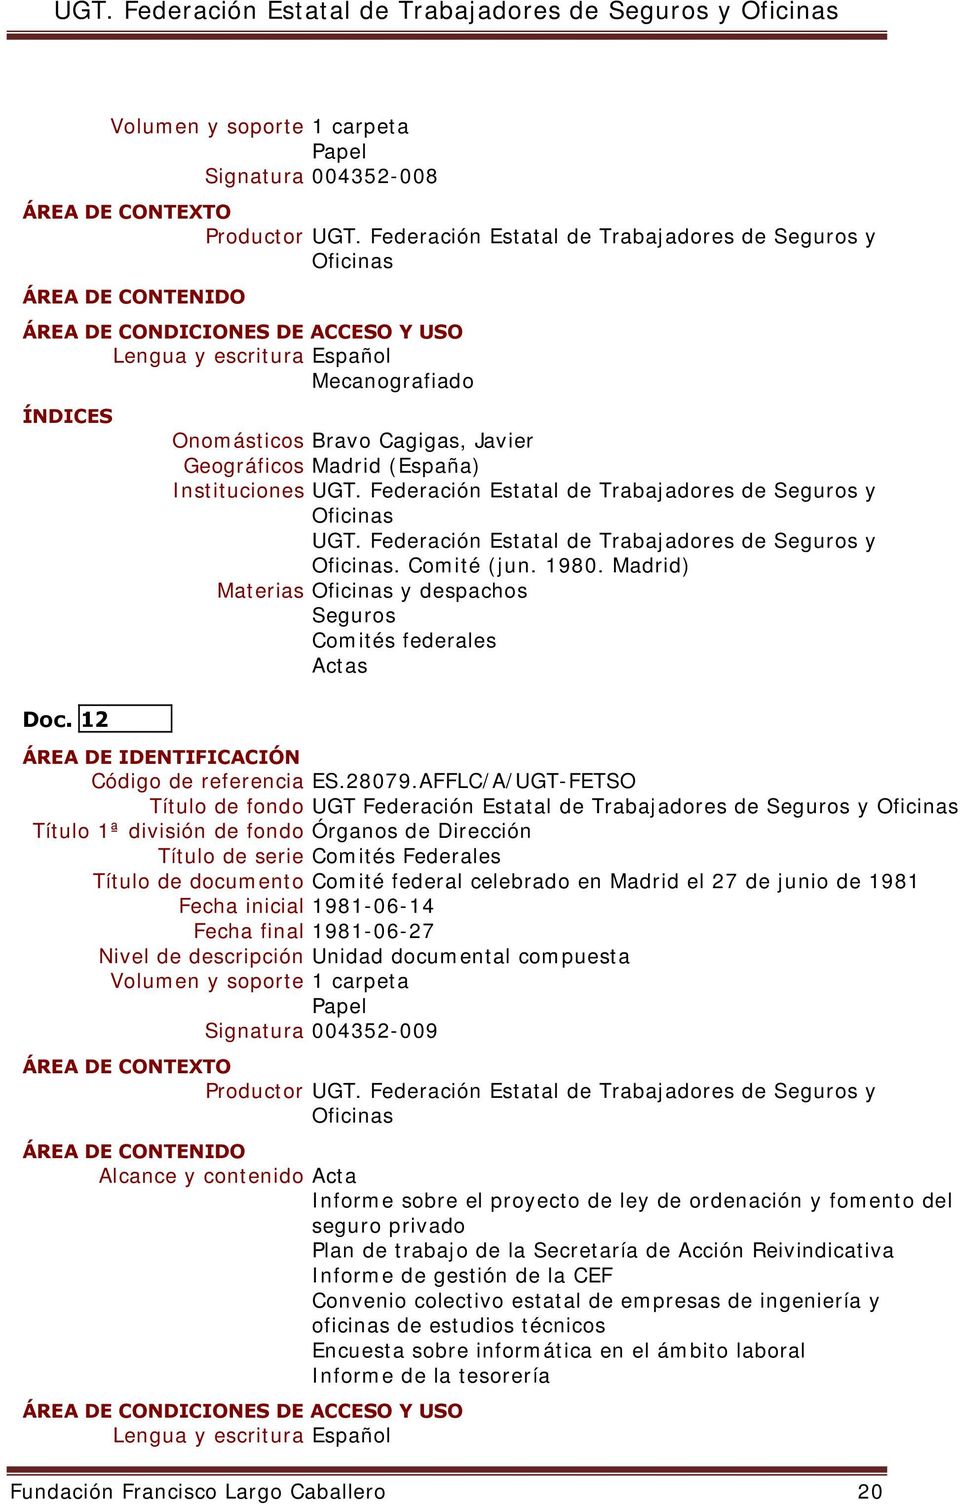 Madrid el 27 de junio de 1981 Fecha inicial 1981-06-14 Fecha final 1981-06-27 Nivel de descripción Unidad documental compuesta Signatura 004352-009 Productor Alcance y contenido Acta Informe sobre el